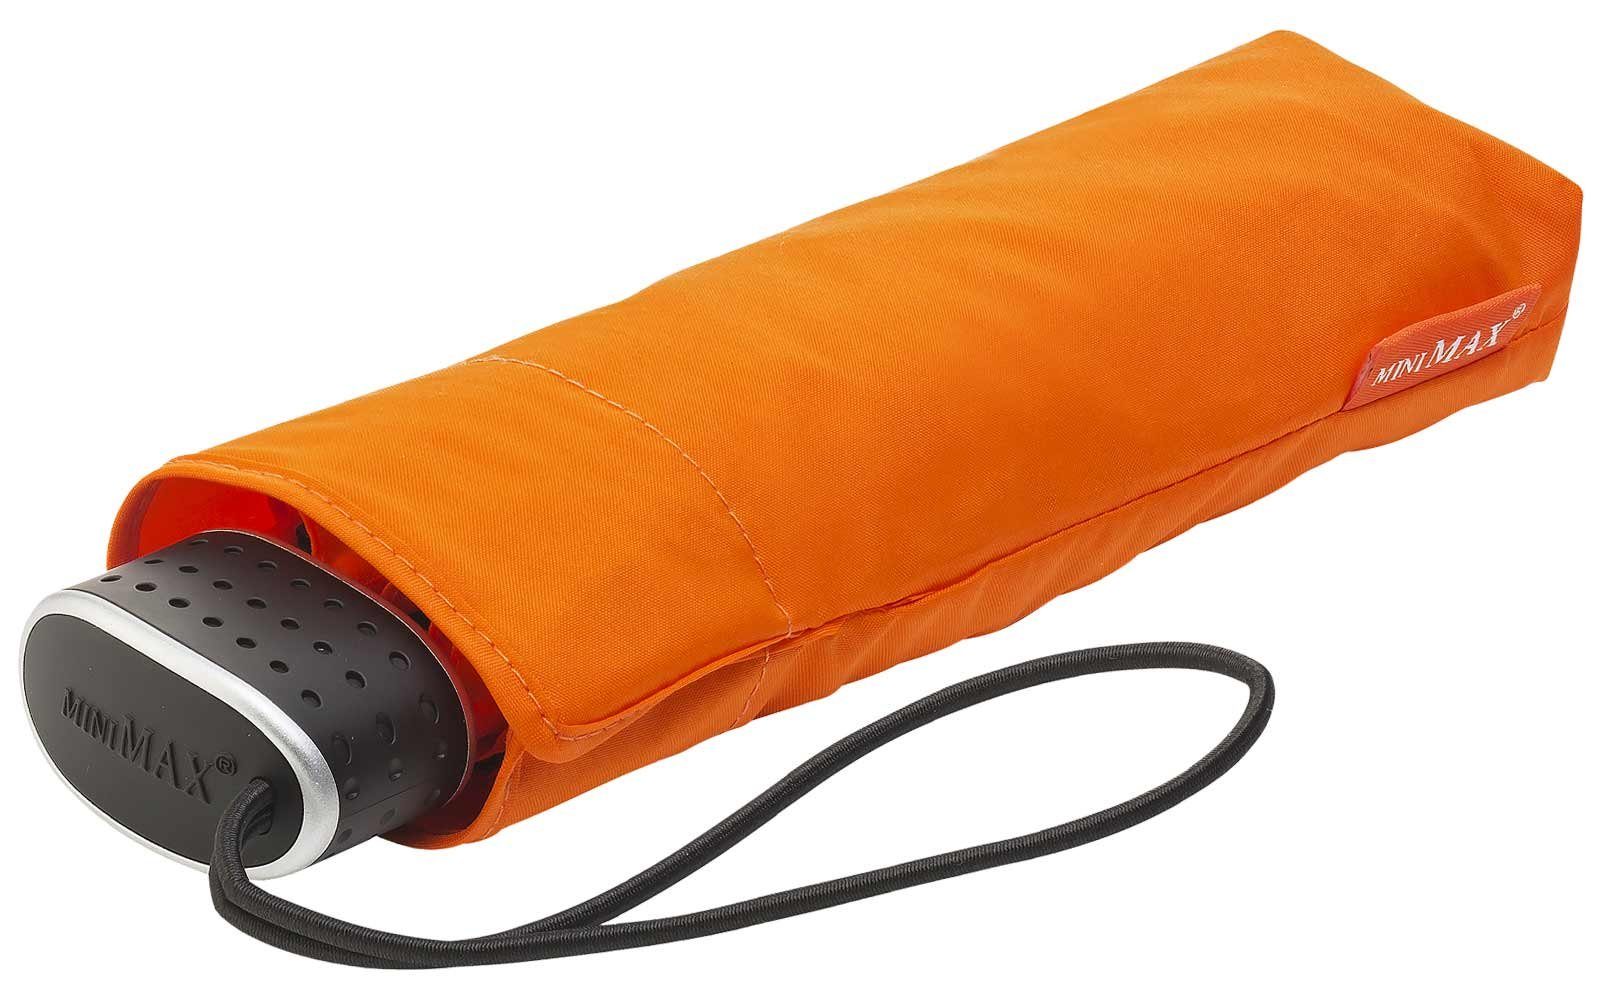 Reisegepäck flacher Impliva das perfekt für Taschenregenschirm Flat orange leichter Schirm, miniMAX®